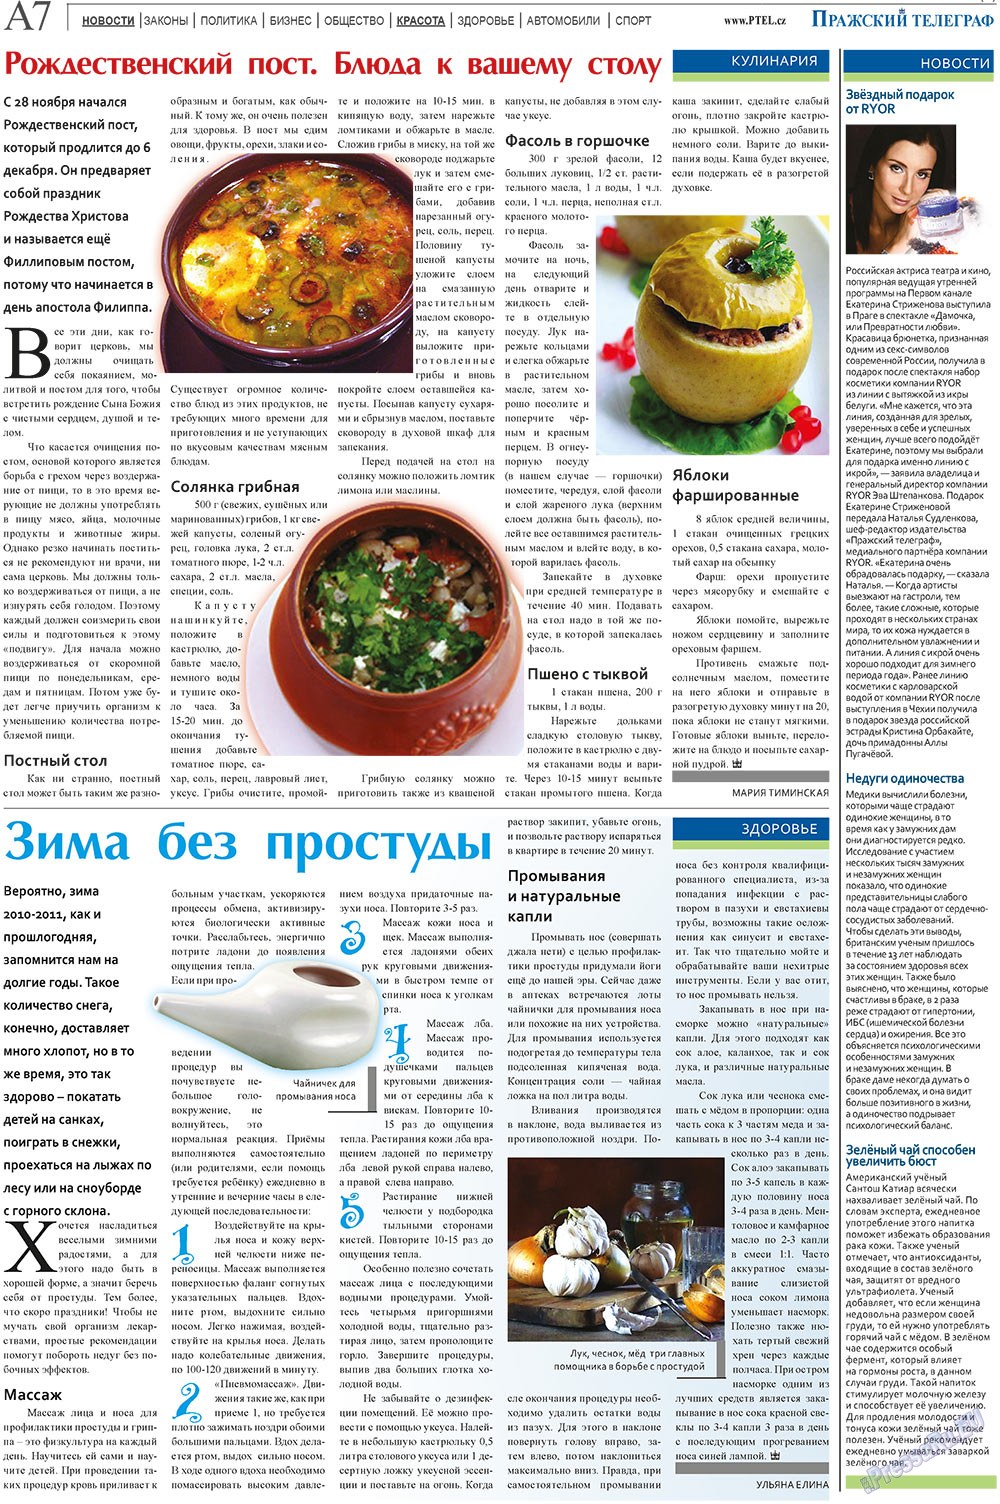 Пражский телеграф (газета). 2010 год, номер 49, стр. 7